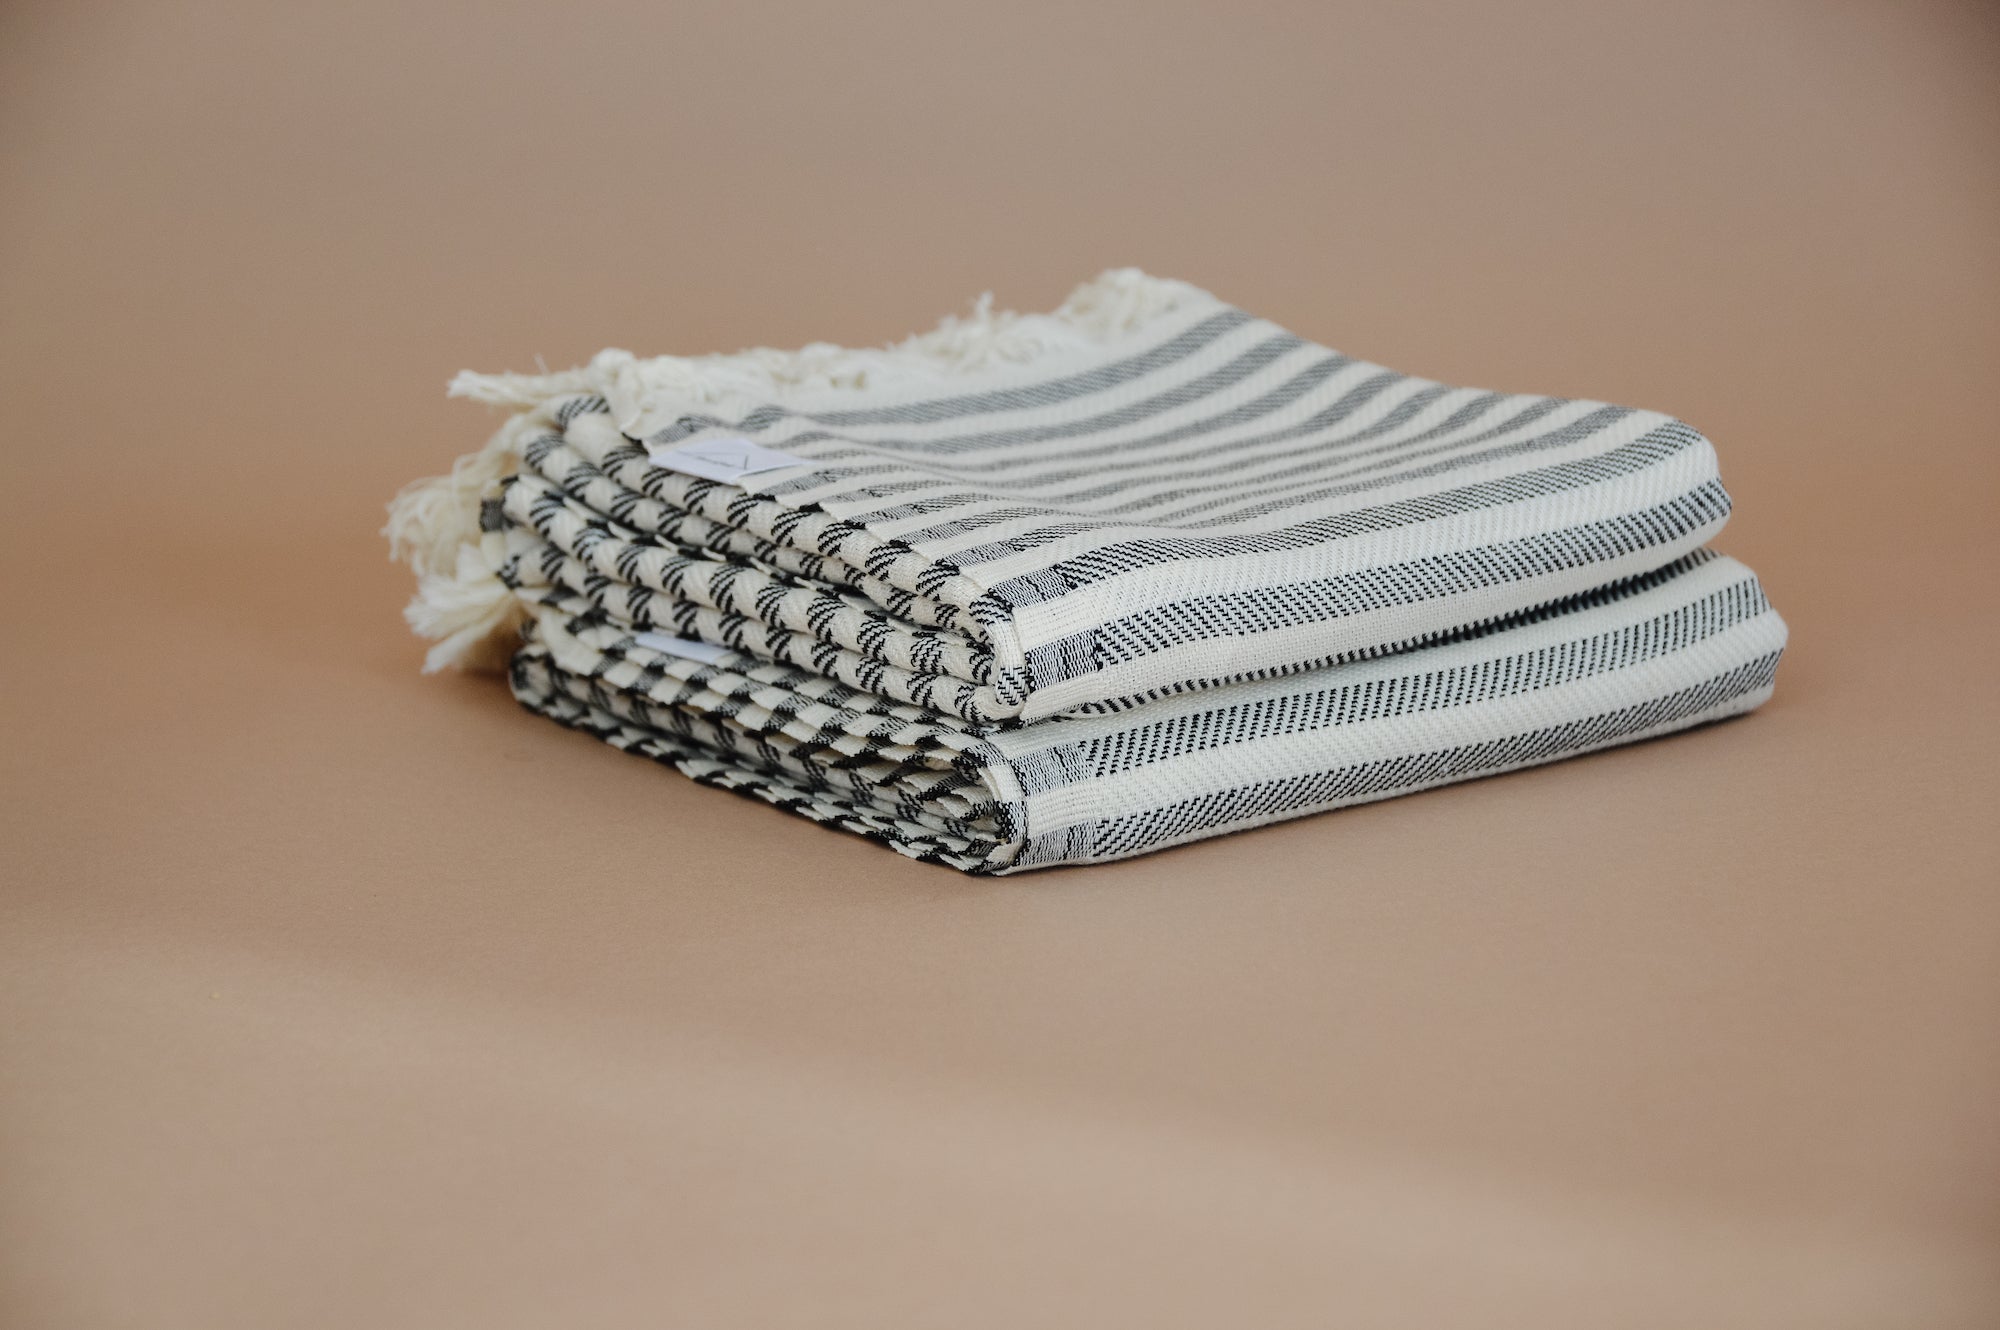 Oversized 100% Turkish Cotton Towel